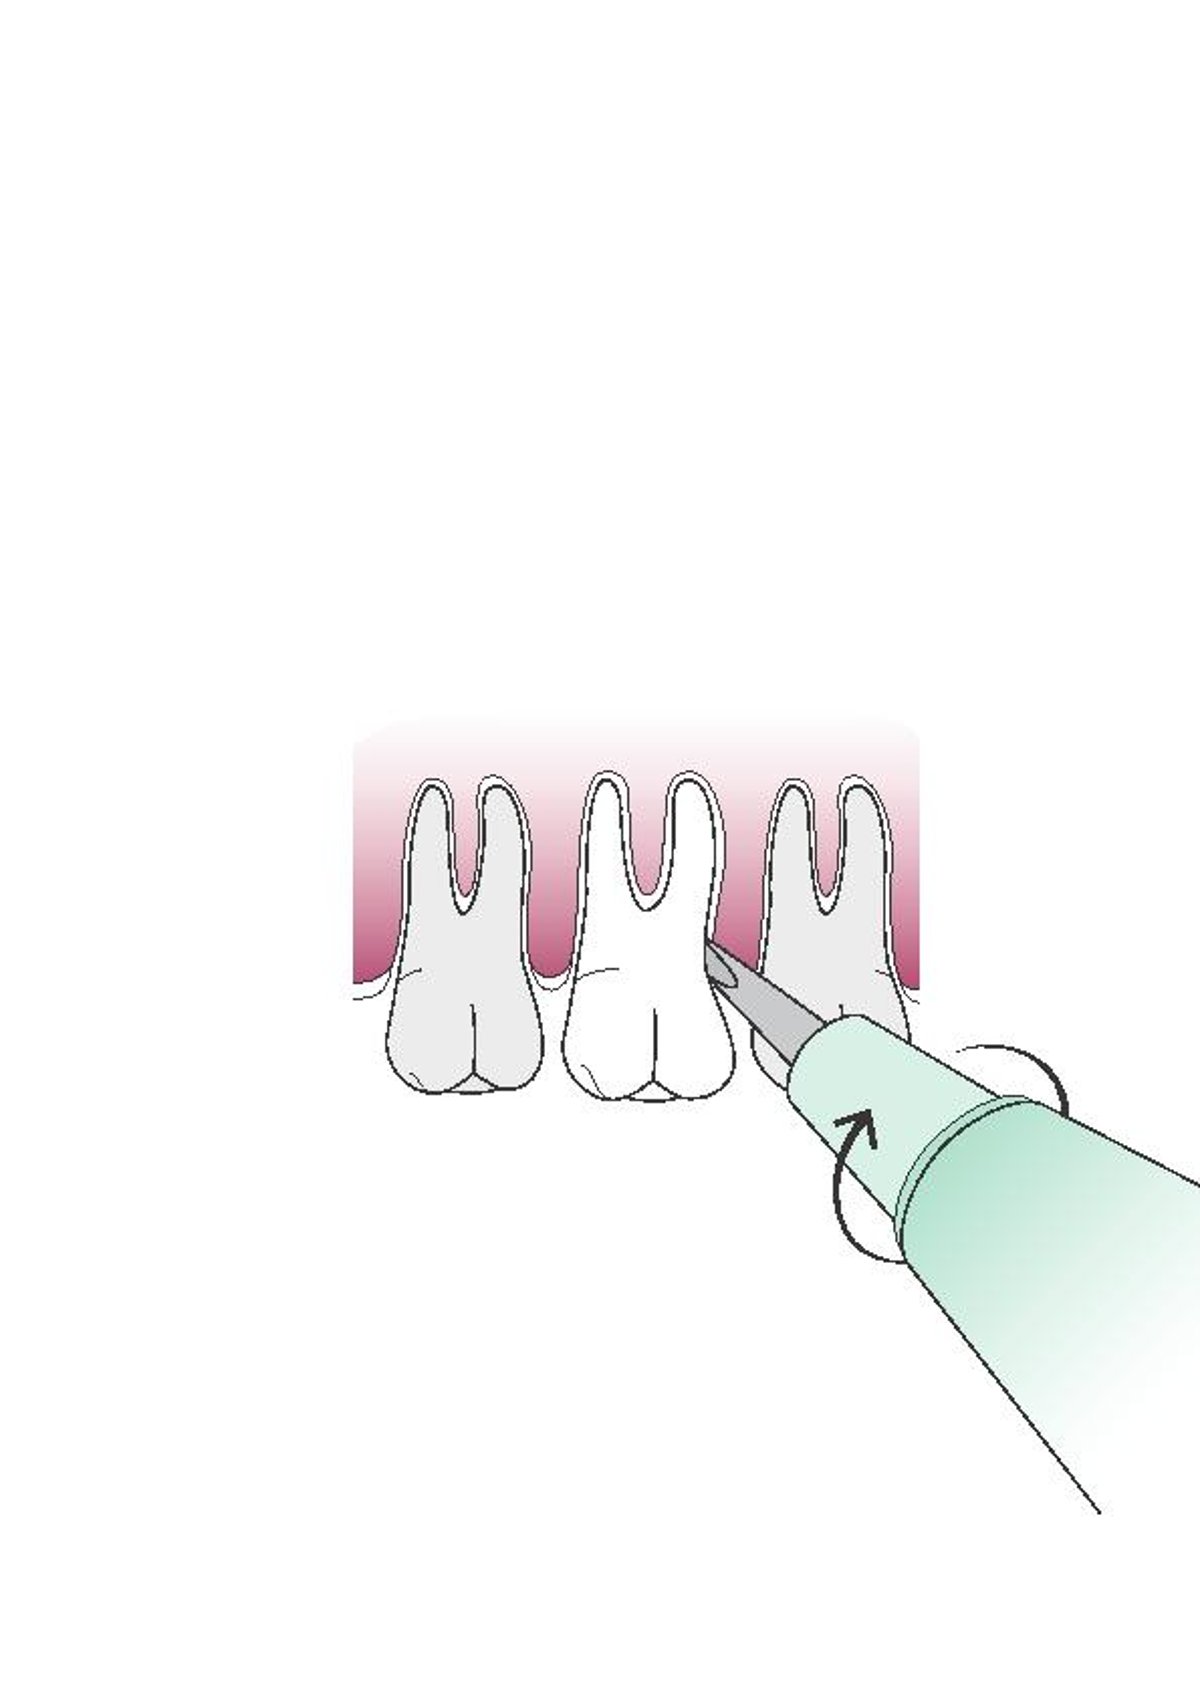 Verwendung eines Zahnhebers